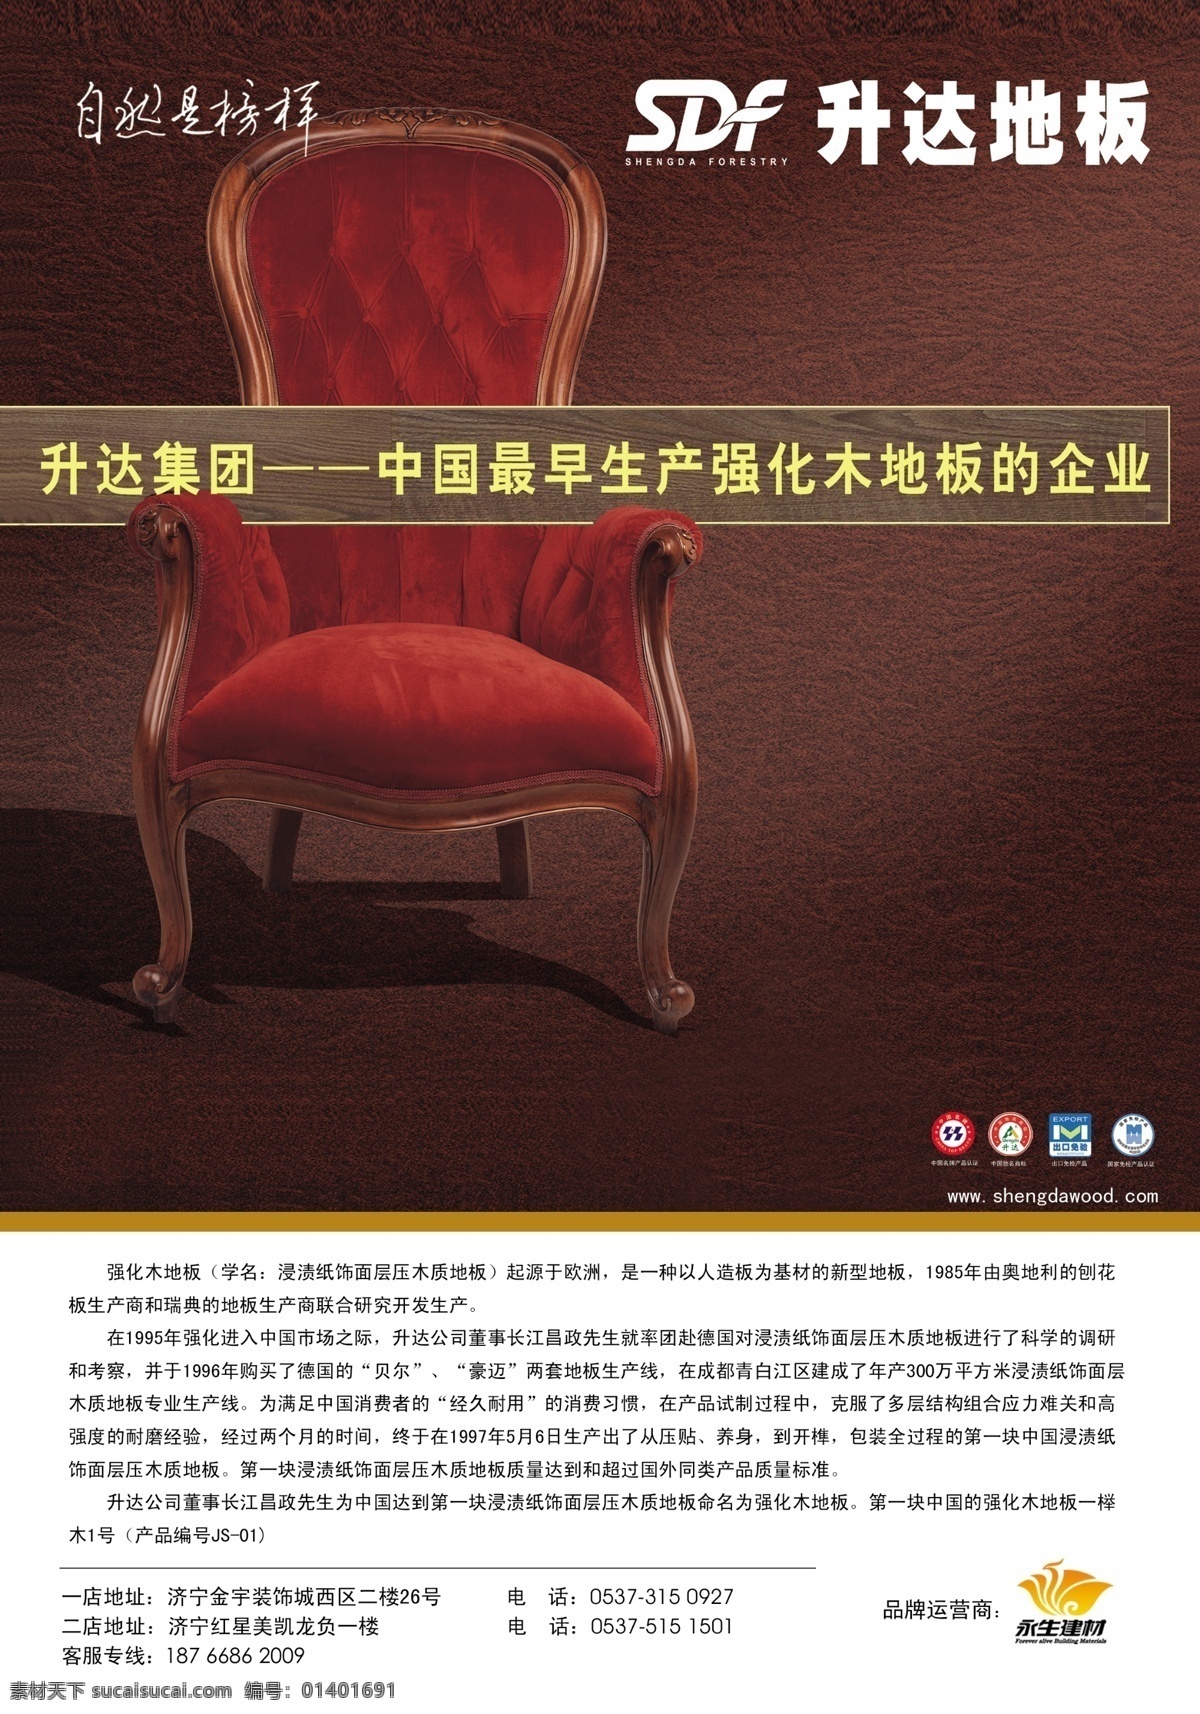 升达地板单页 升达地板 永生建材 座位 中国驰名商标 中国名牌产品 咖啡色 广告设计模板 源文件